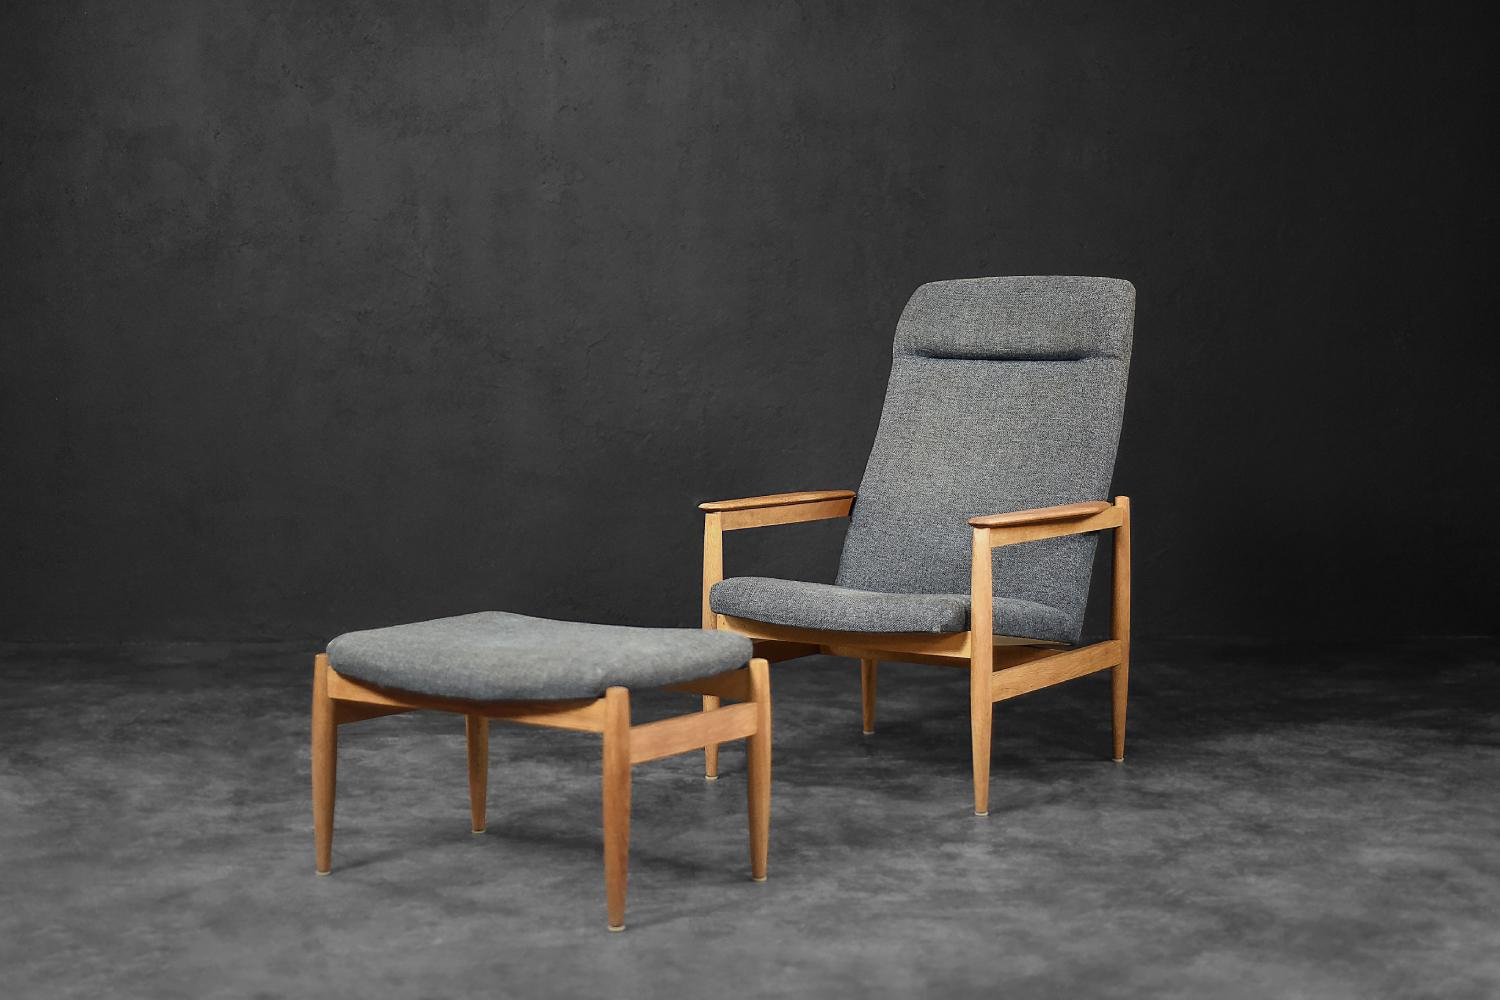 Ce fauteuil Carlton moderniste avec pouf a été produit par la société suédoise IKEA en 1963. Il s'agit d'un modèle avec un haut dossier. Le cadre est en bois de chêne dans une teinte claire. Le haut dossier est légèrement incliné, ce qui affecte le